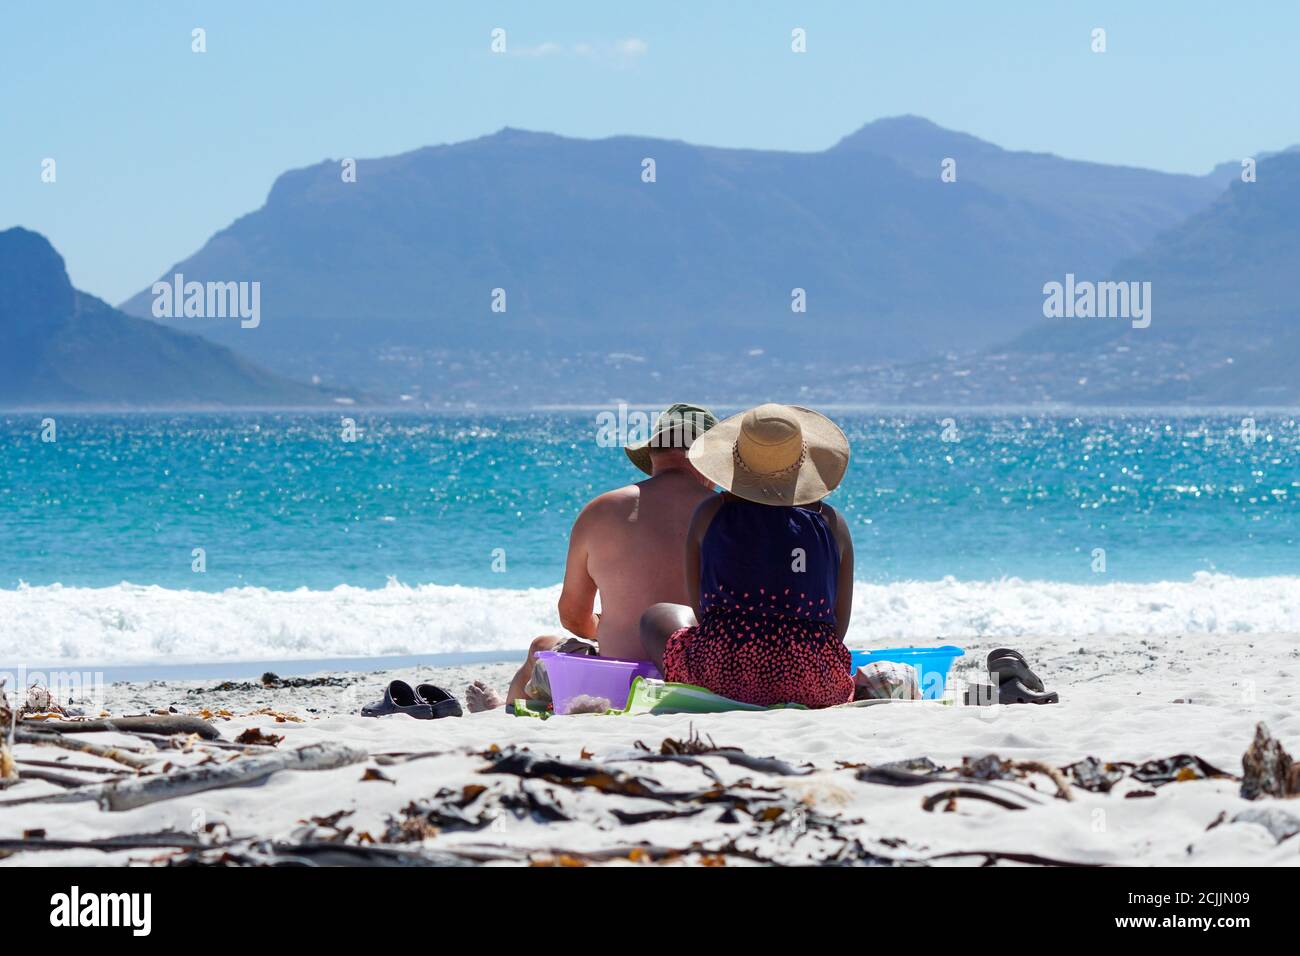 Ein Paar, kaukasischer Mann und schwarze Frau, sitzen zusammen auf weißem Sand und blicken auf den glitzernden blauen Ozean und die Berglandschaft Stockfoto